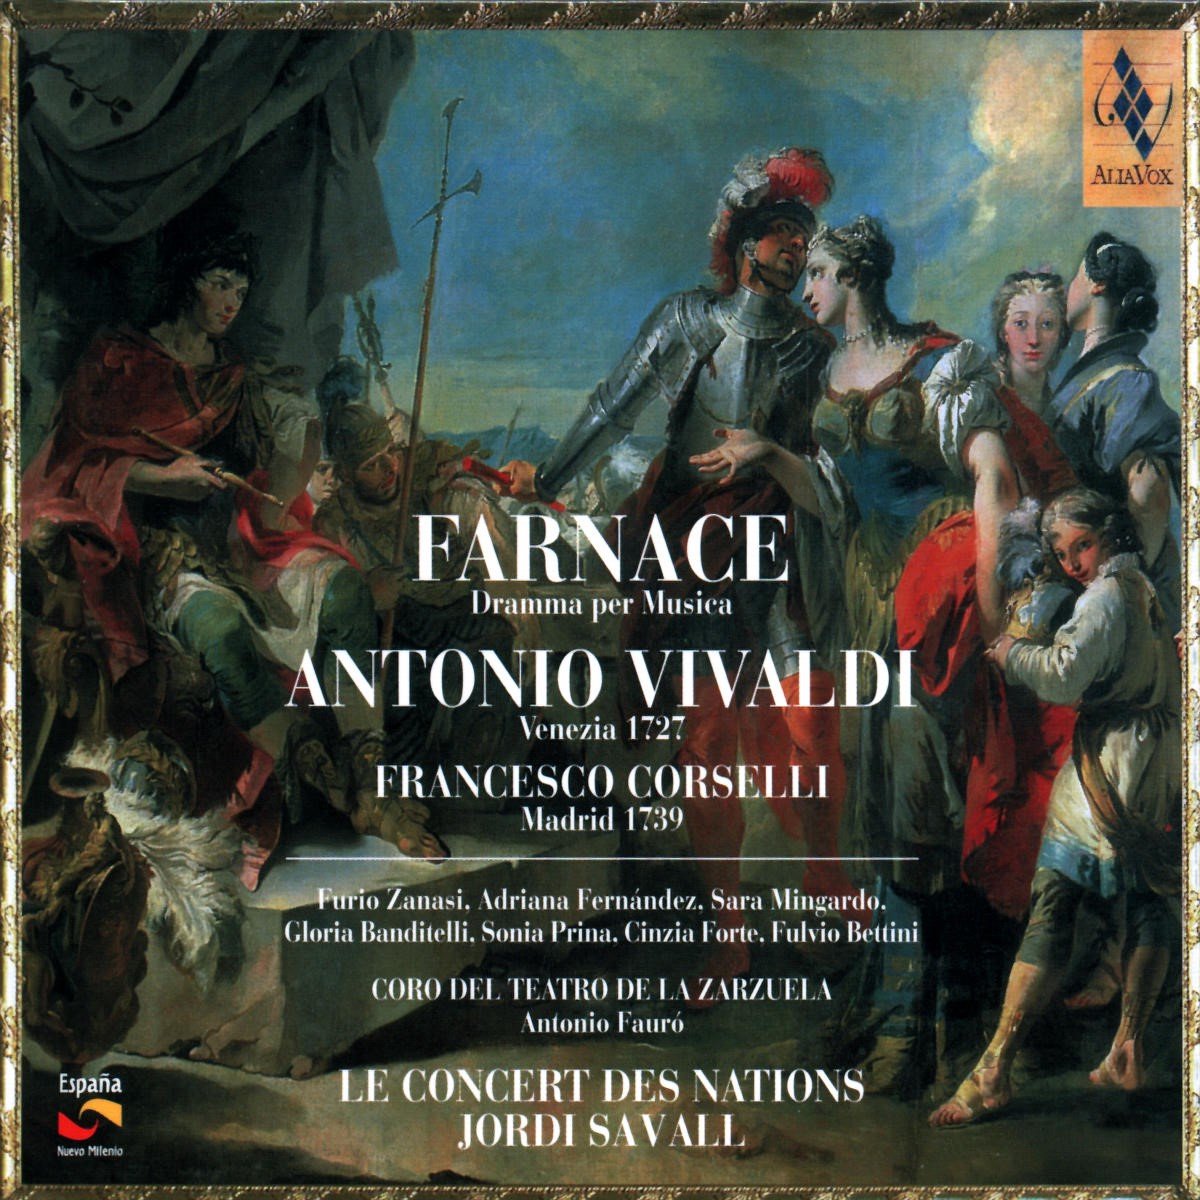 Coro Teatro Zarzuela, Le Concert Des Nations, Jordi Savall - Vivaldi: Farnace, Dramma Per Musica (CD) - Coro Teatro Zarzuela, Le Concert Des Nations, Jordi Savall